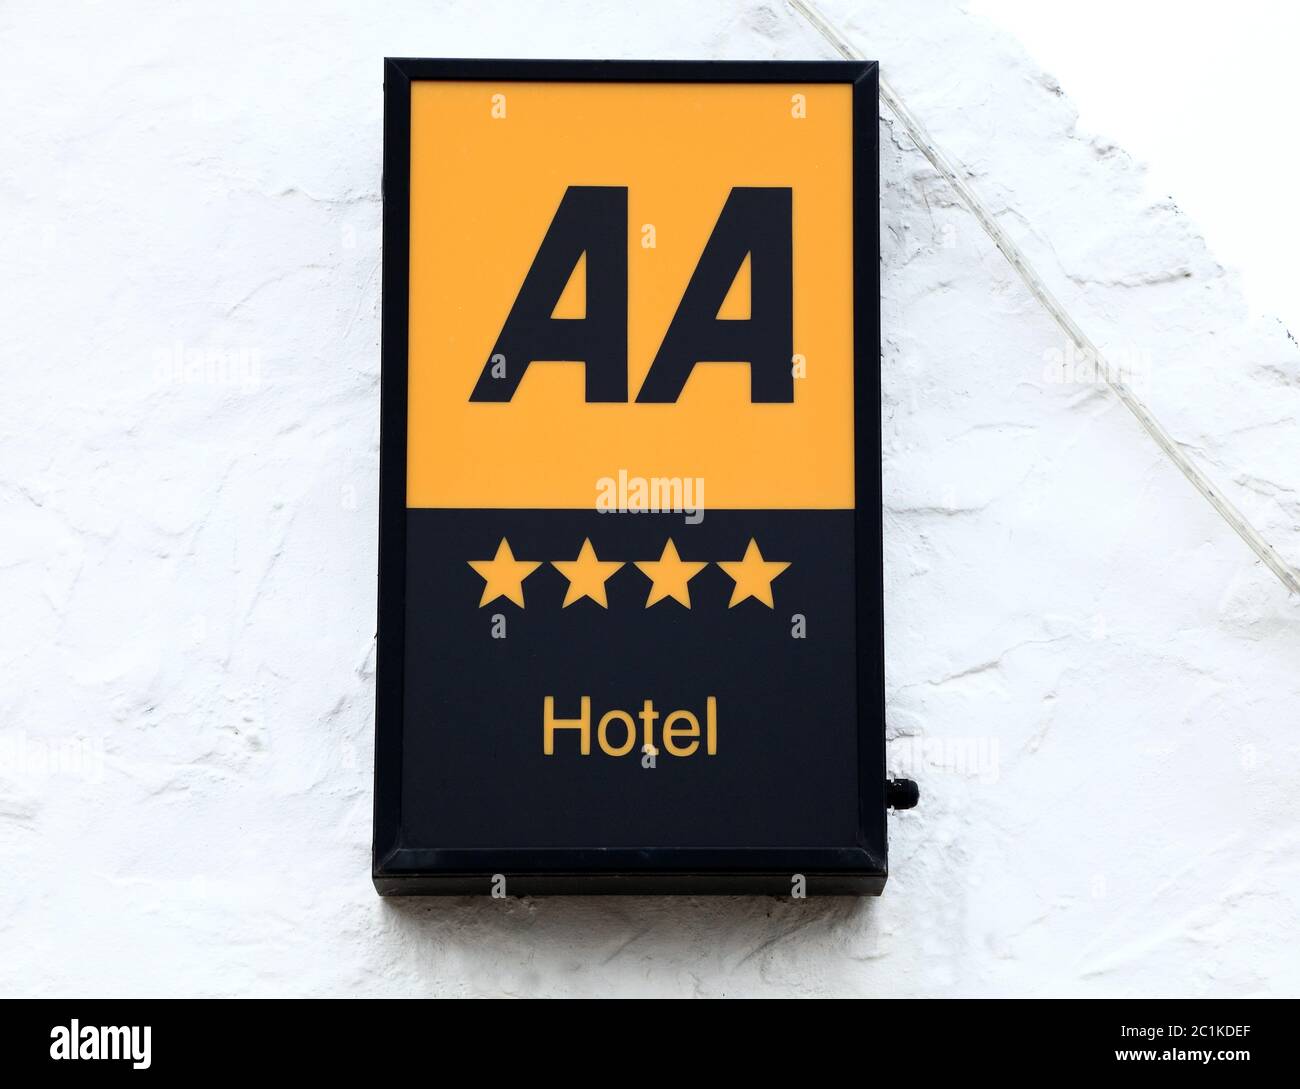 Hotel 4 estrellas, AA, Asociación de automóviles, clasificación, cuatro estrellas, Hotel, signo,Inglaterra, Reino Unido Foto de stock